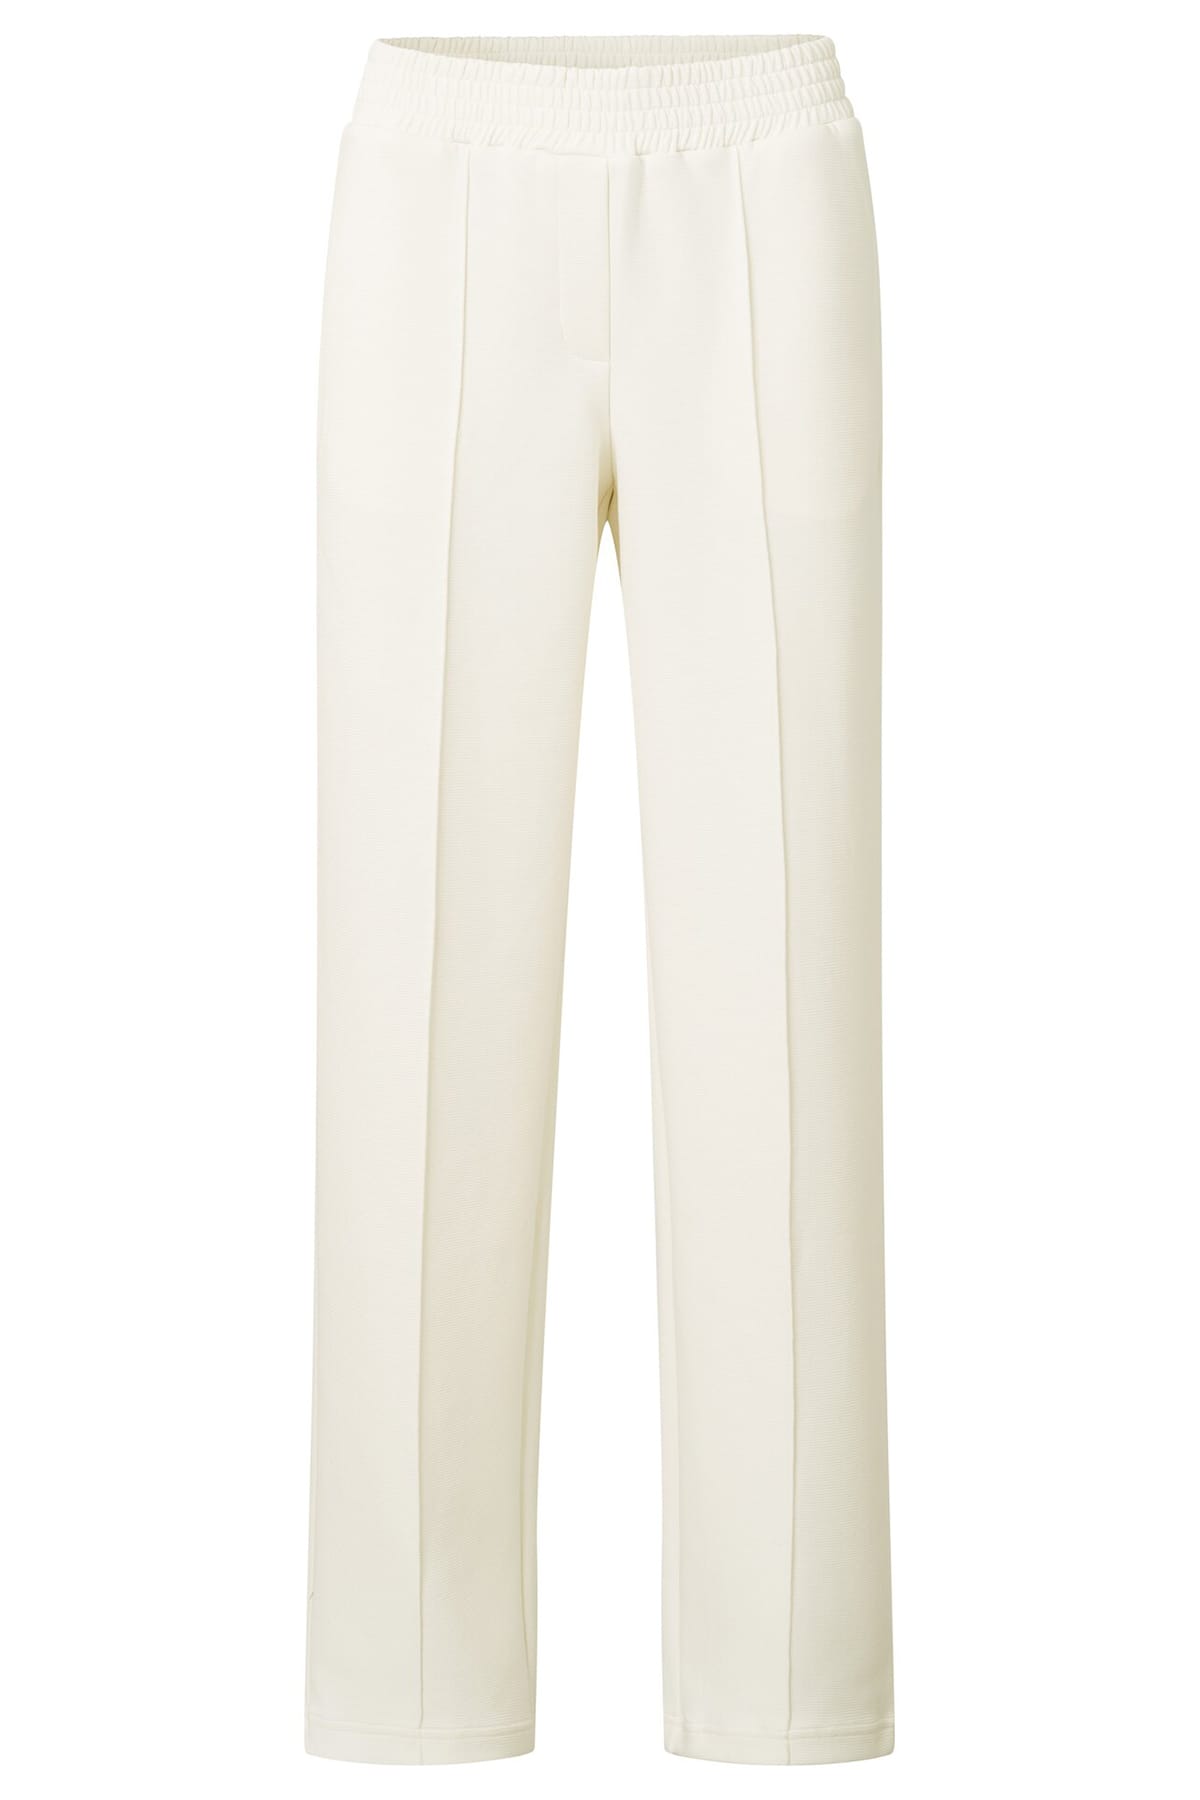 Jersey-Hose mit weitem Bein, elastischem Bund und Ziernähten Ivory White Hose YAYA 